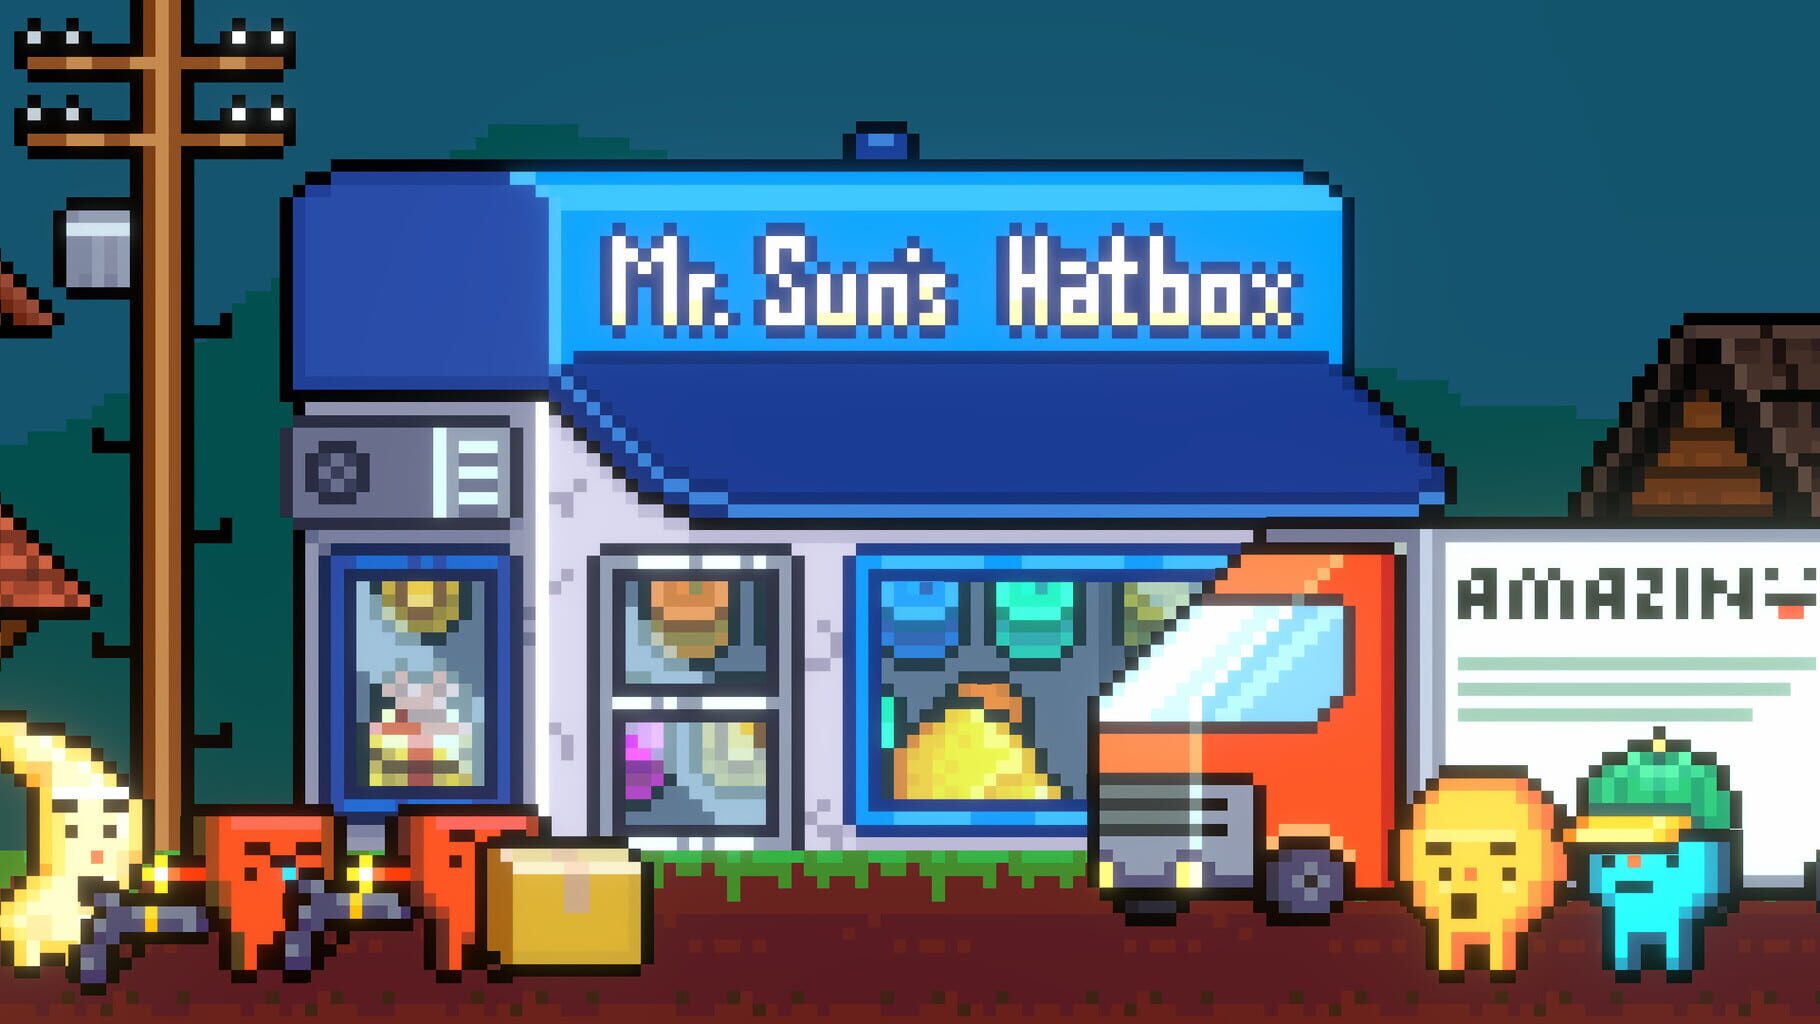 Mr start. Mr. Sun's Hatbox.